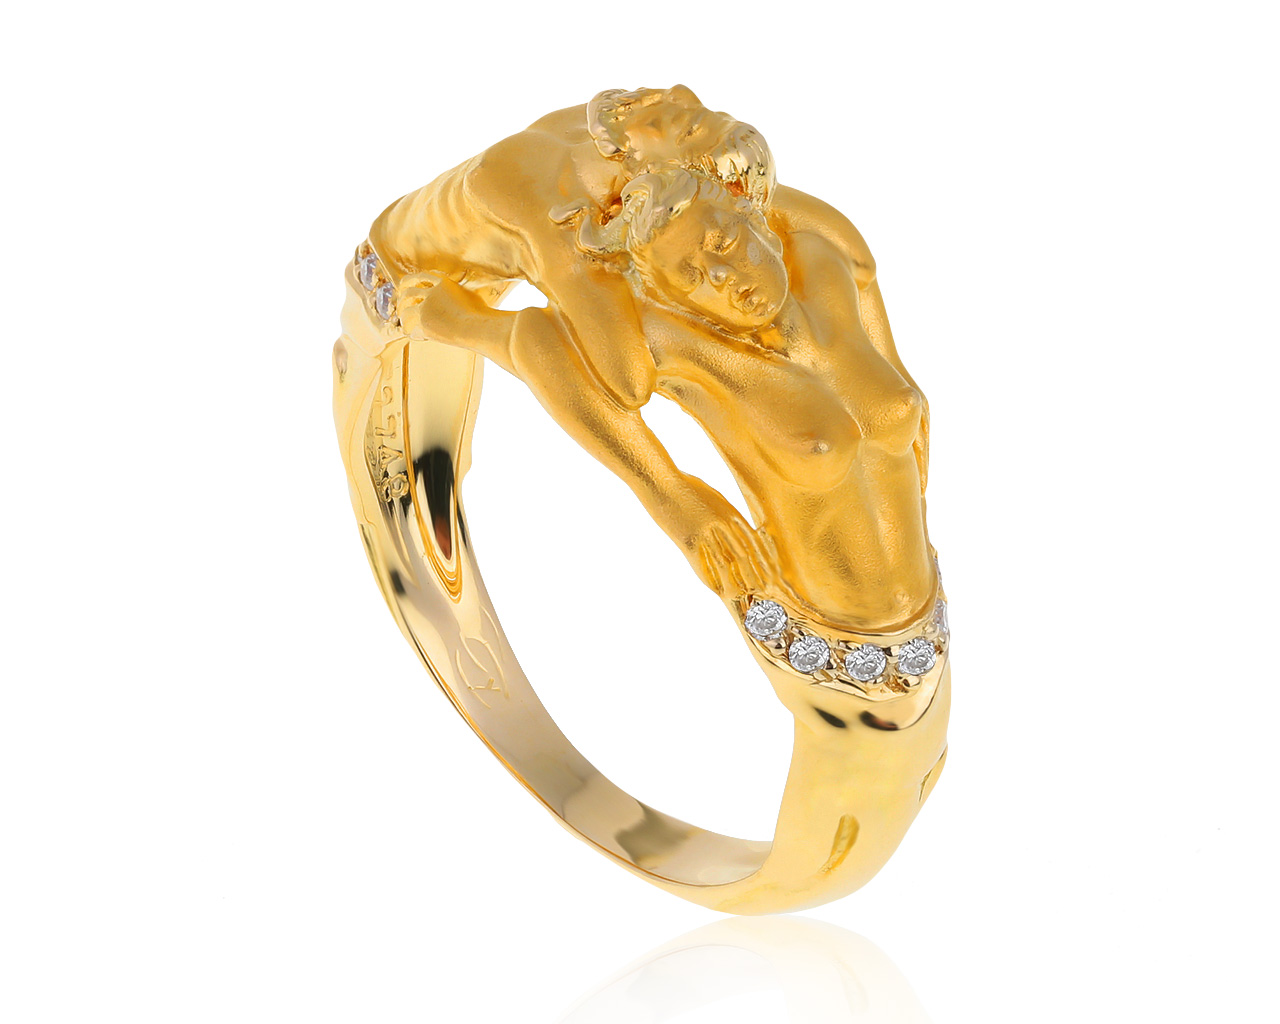 Оригинальное золотое кольцо с бриллиантами 0.08ct Carrera y Carrera Manuel Carrera 280521/9